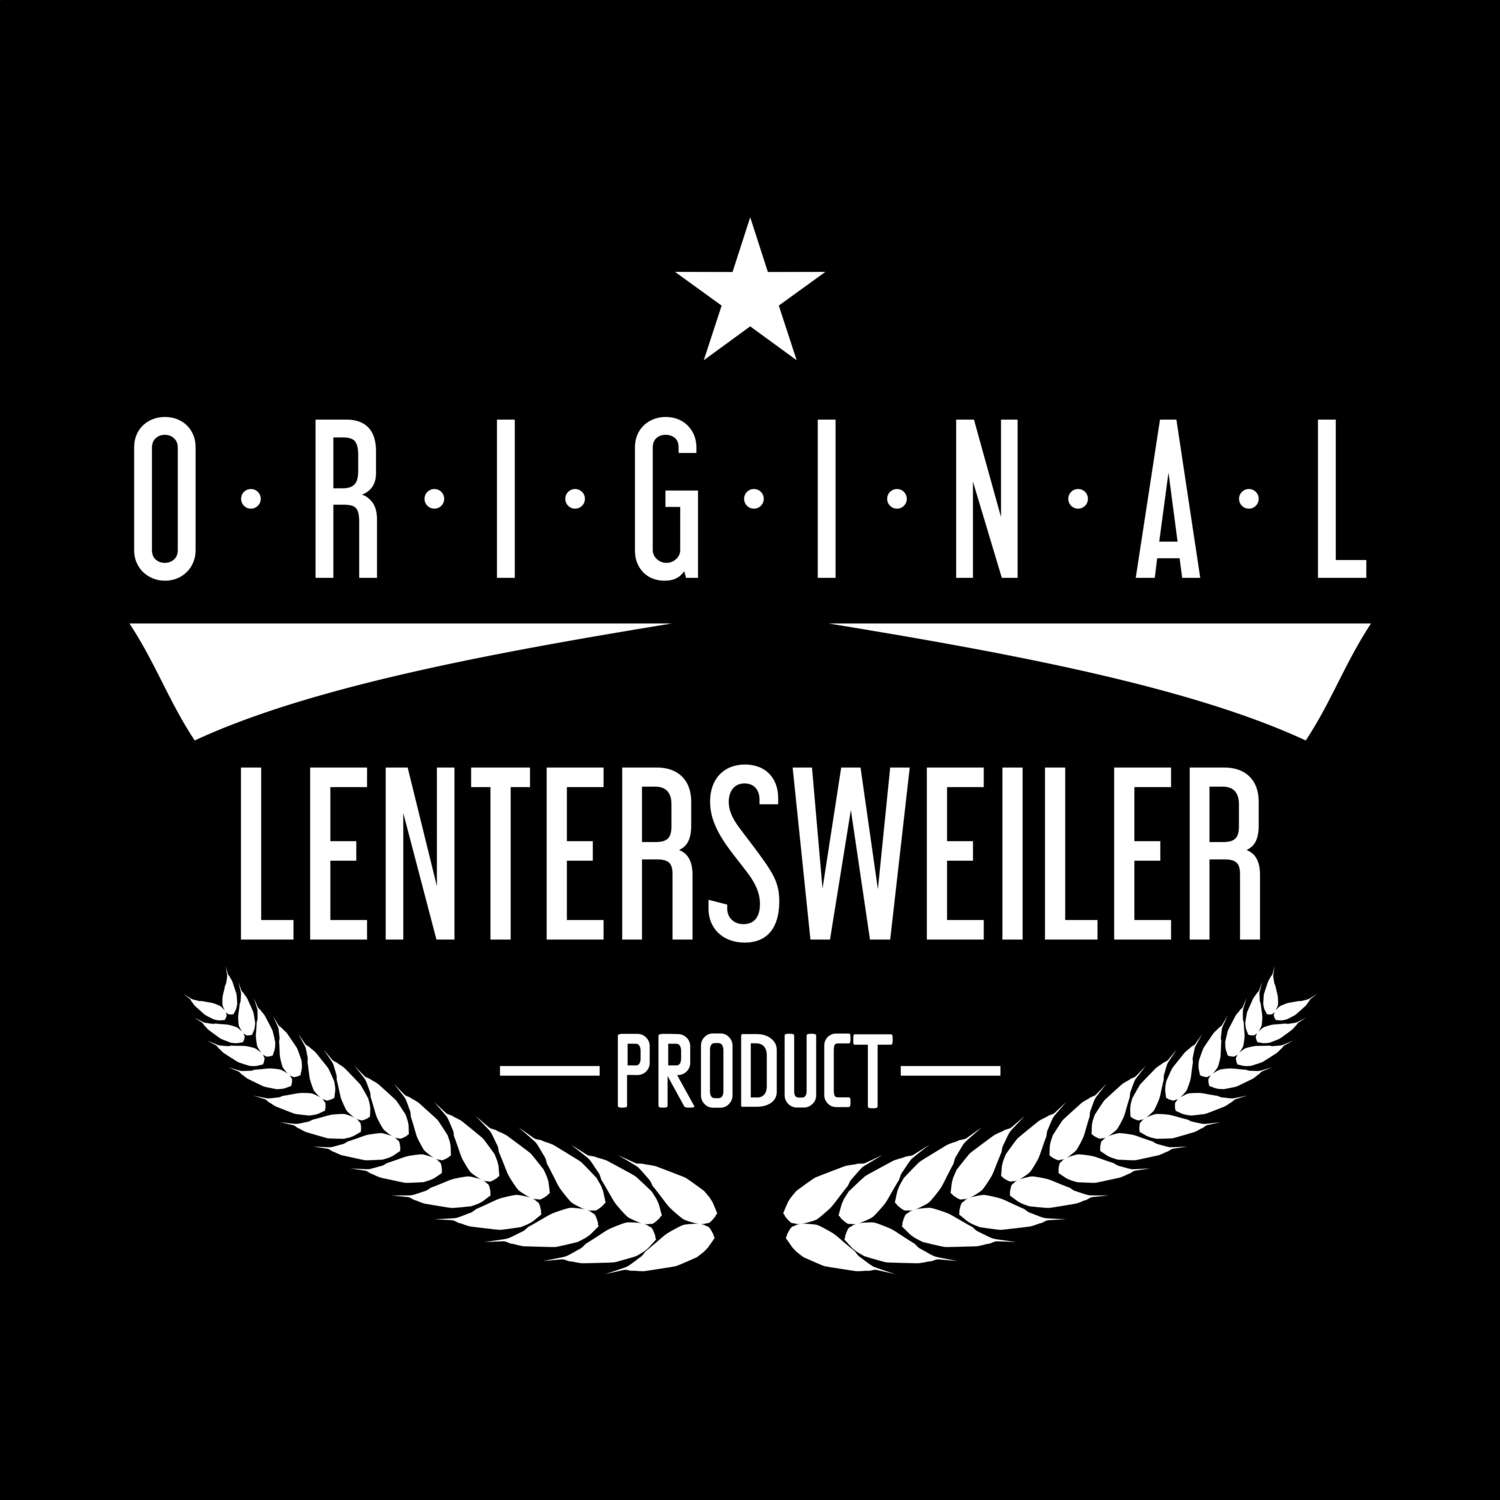 Lentersweiler T-Shirt »Original Product«